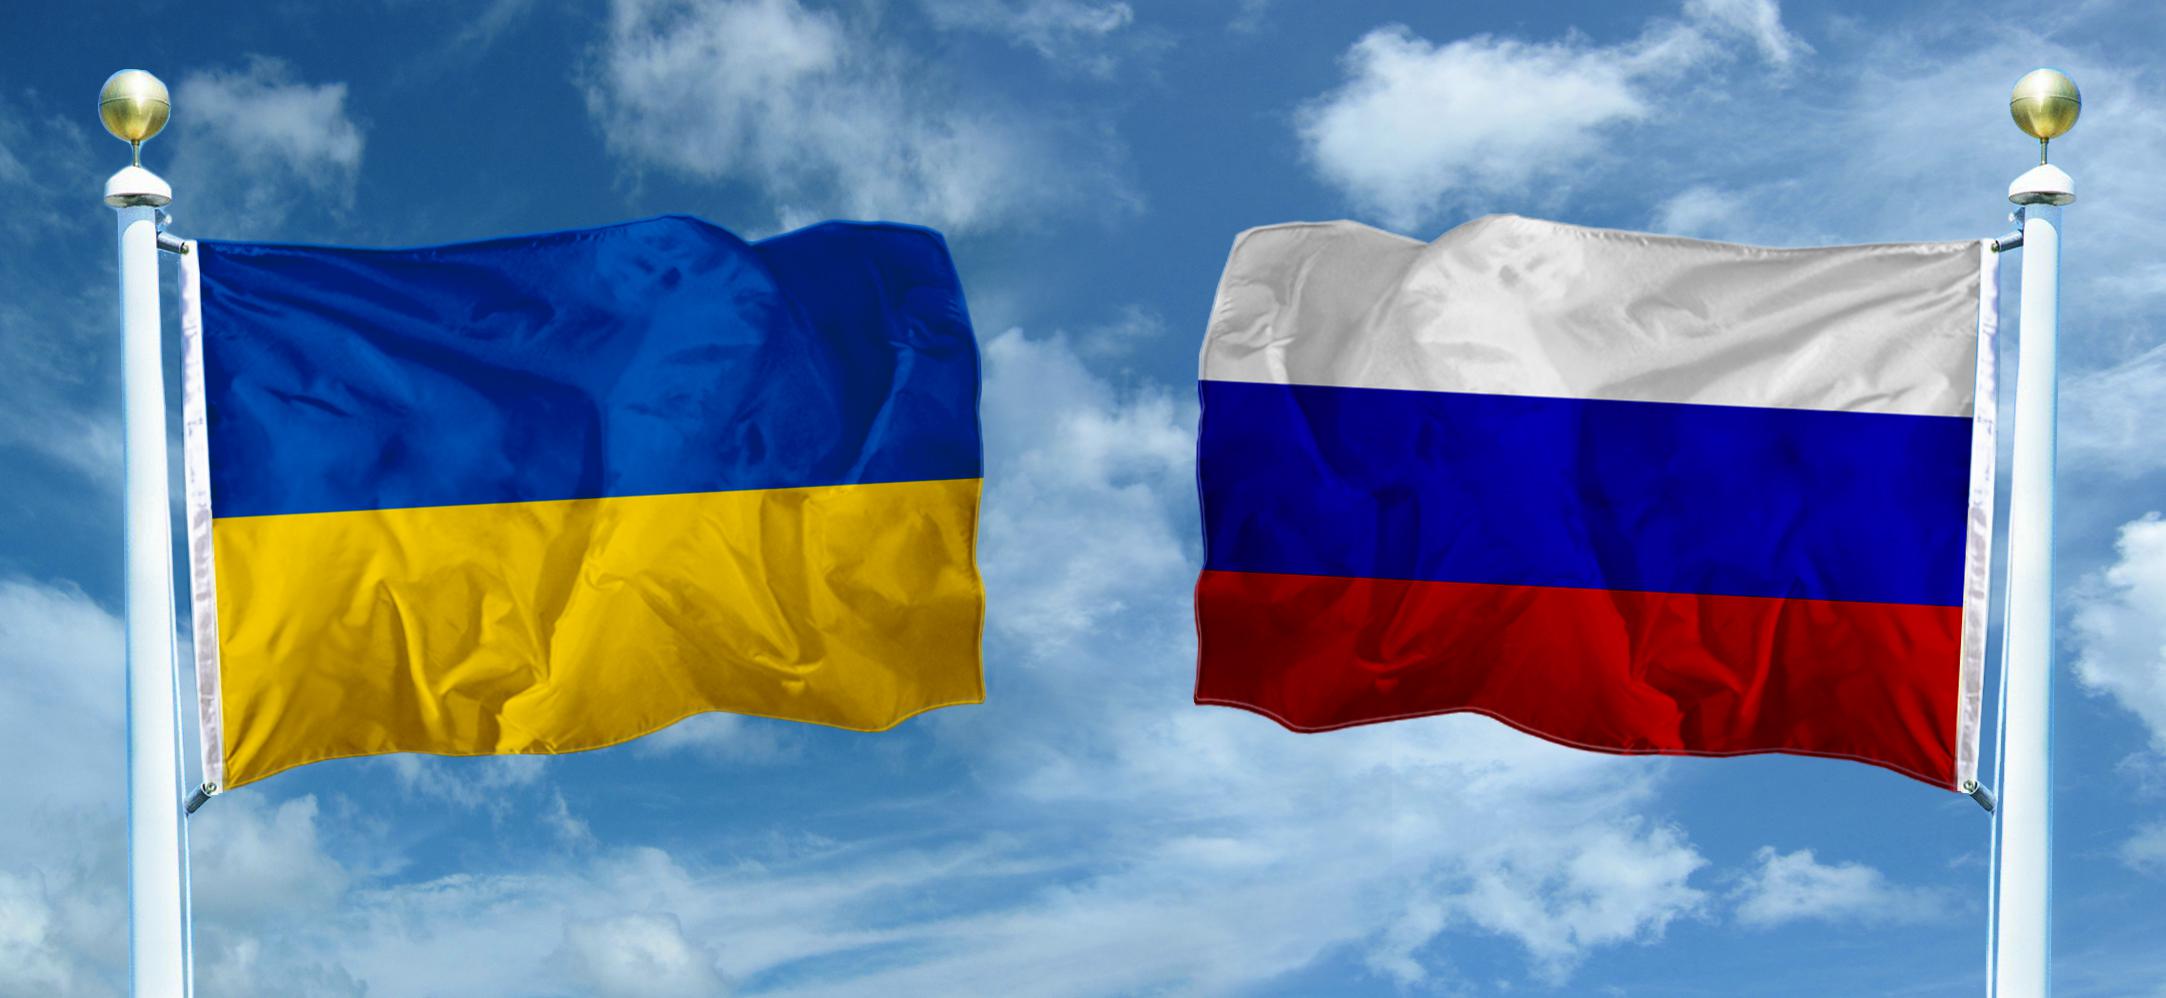 Бабченко поразил соцсети сравнением Украины и России: такое в Киеве просто невозможно представить - видео